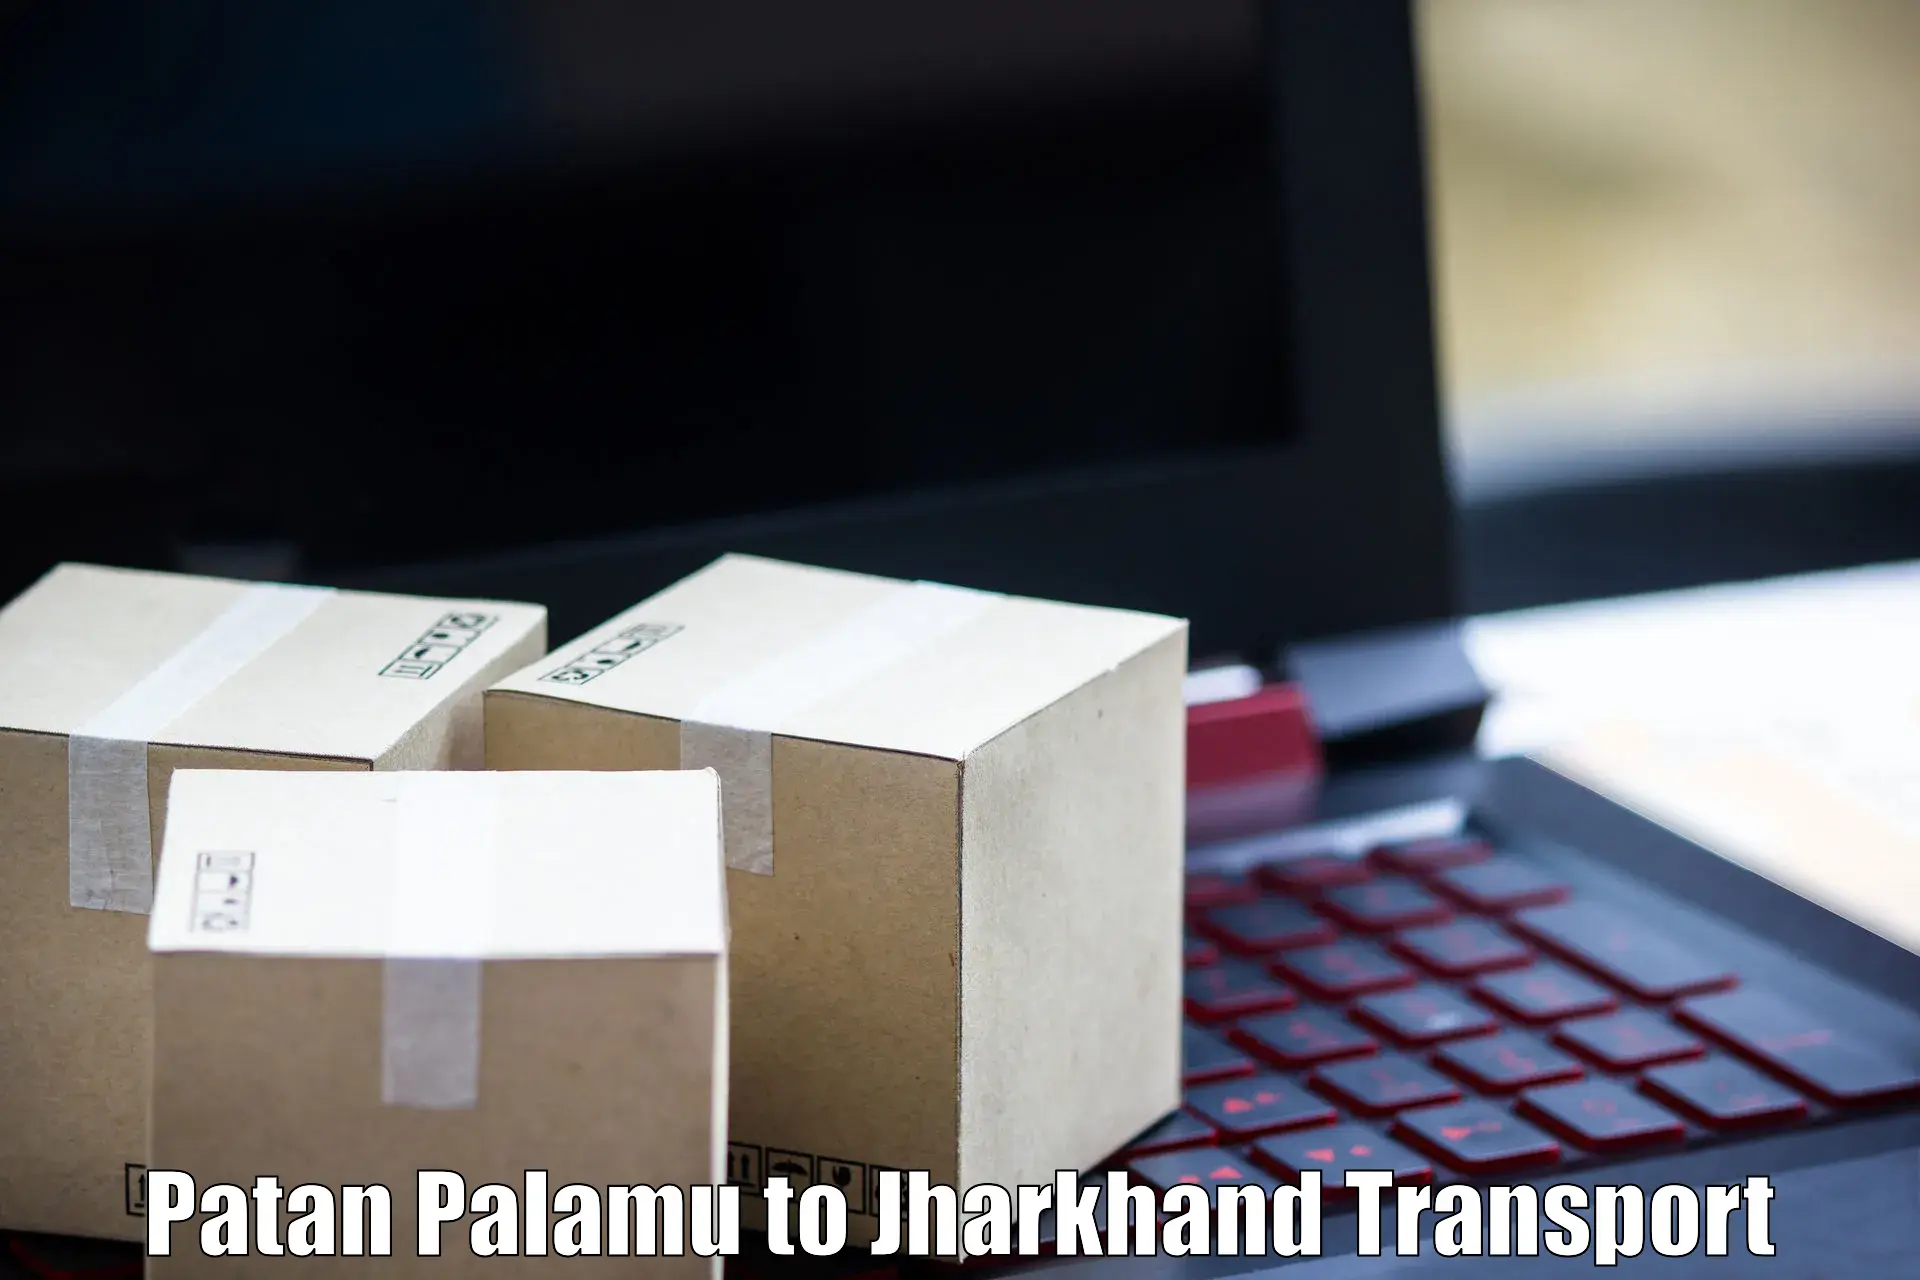 Nearest transport service Patan Palamu to Mahagama